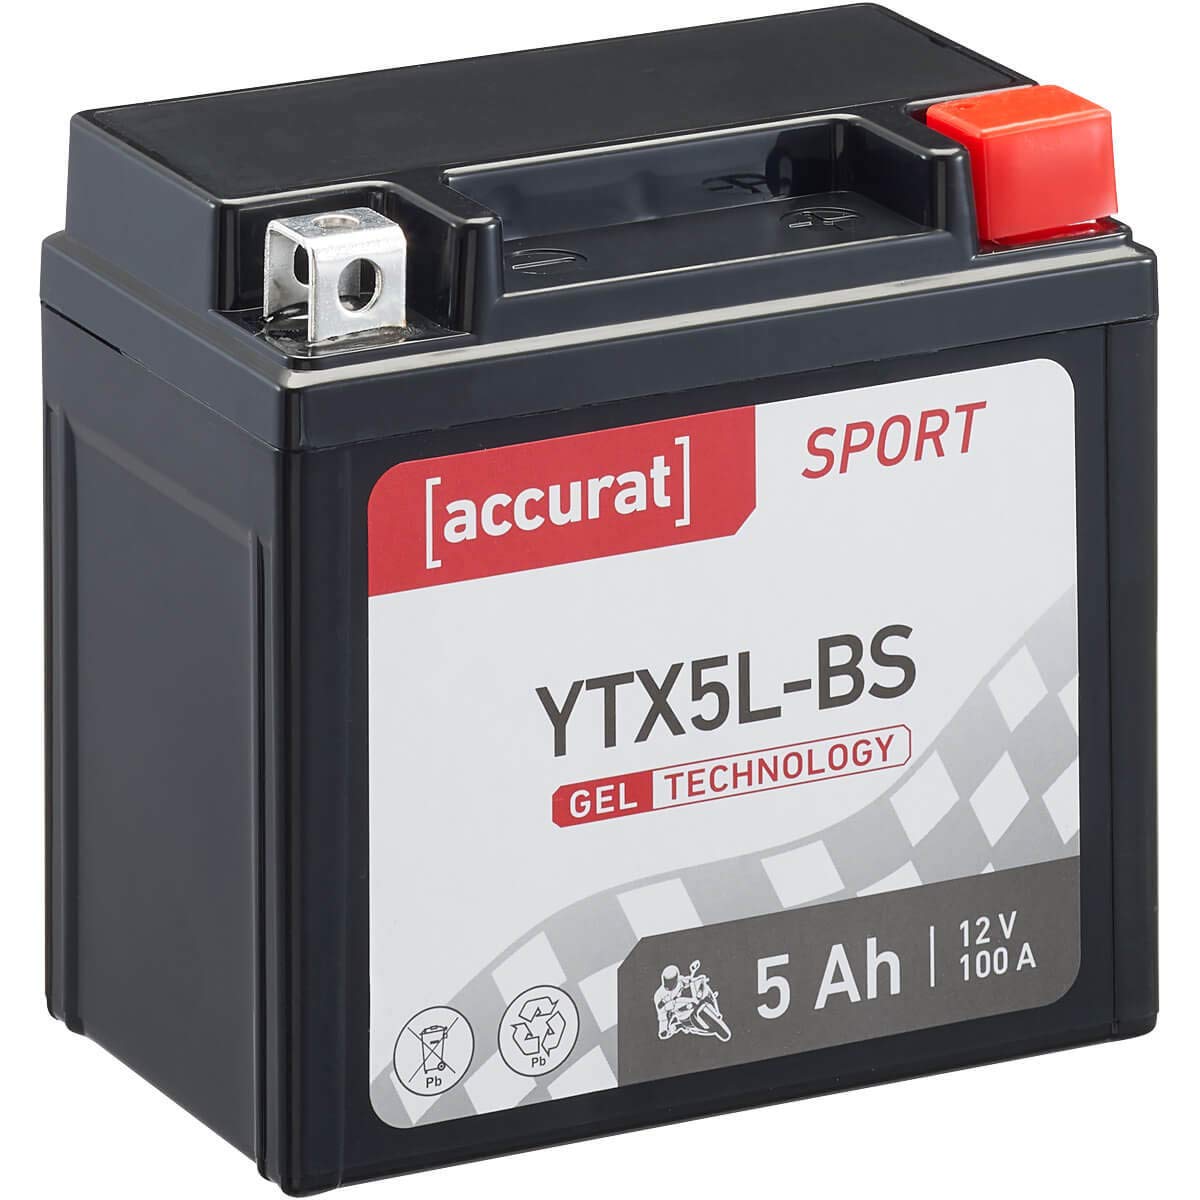 Accurat Motorradbatterie YTX5L-BS - 12V, 5Ah, 100A, zyklenfest, wartungsfrei, Gel - Starterbatterie, Batterie in Erstausrüsterqualität für Rasentraktor, Roller, Motorrad, Quad von Accurat